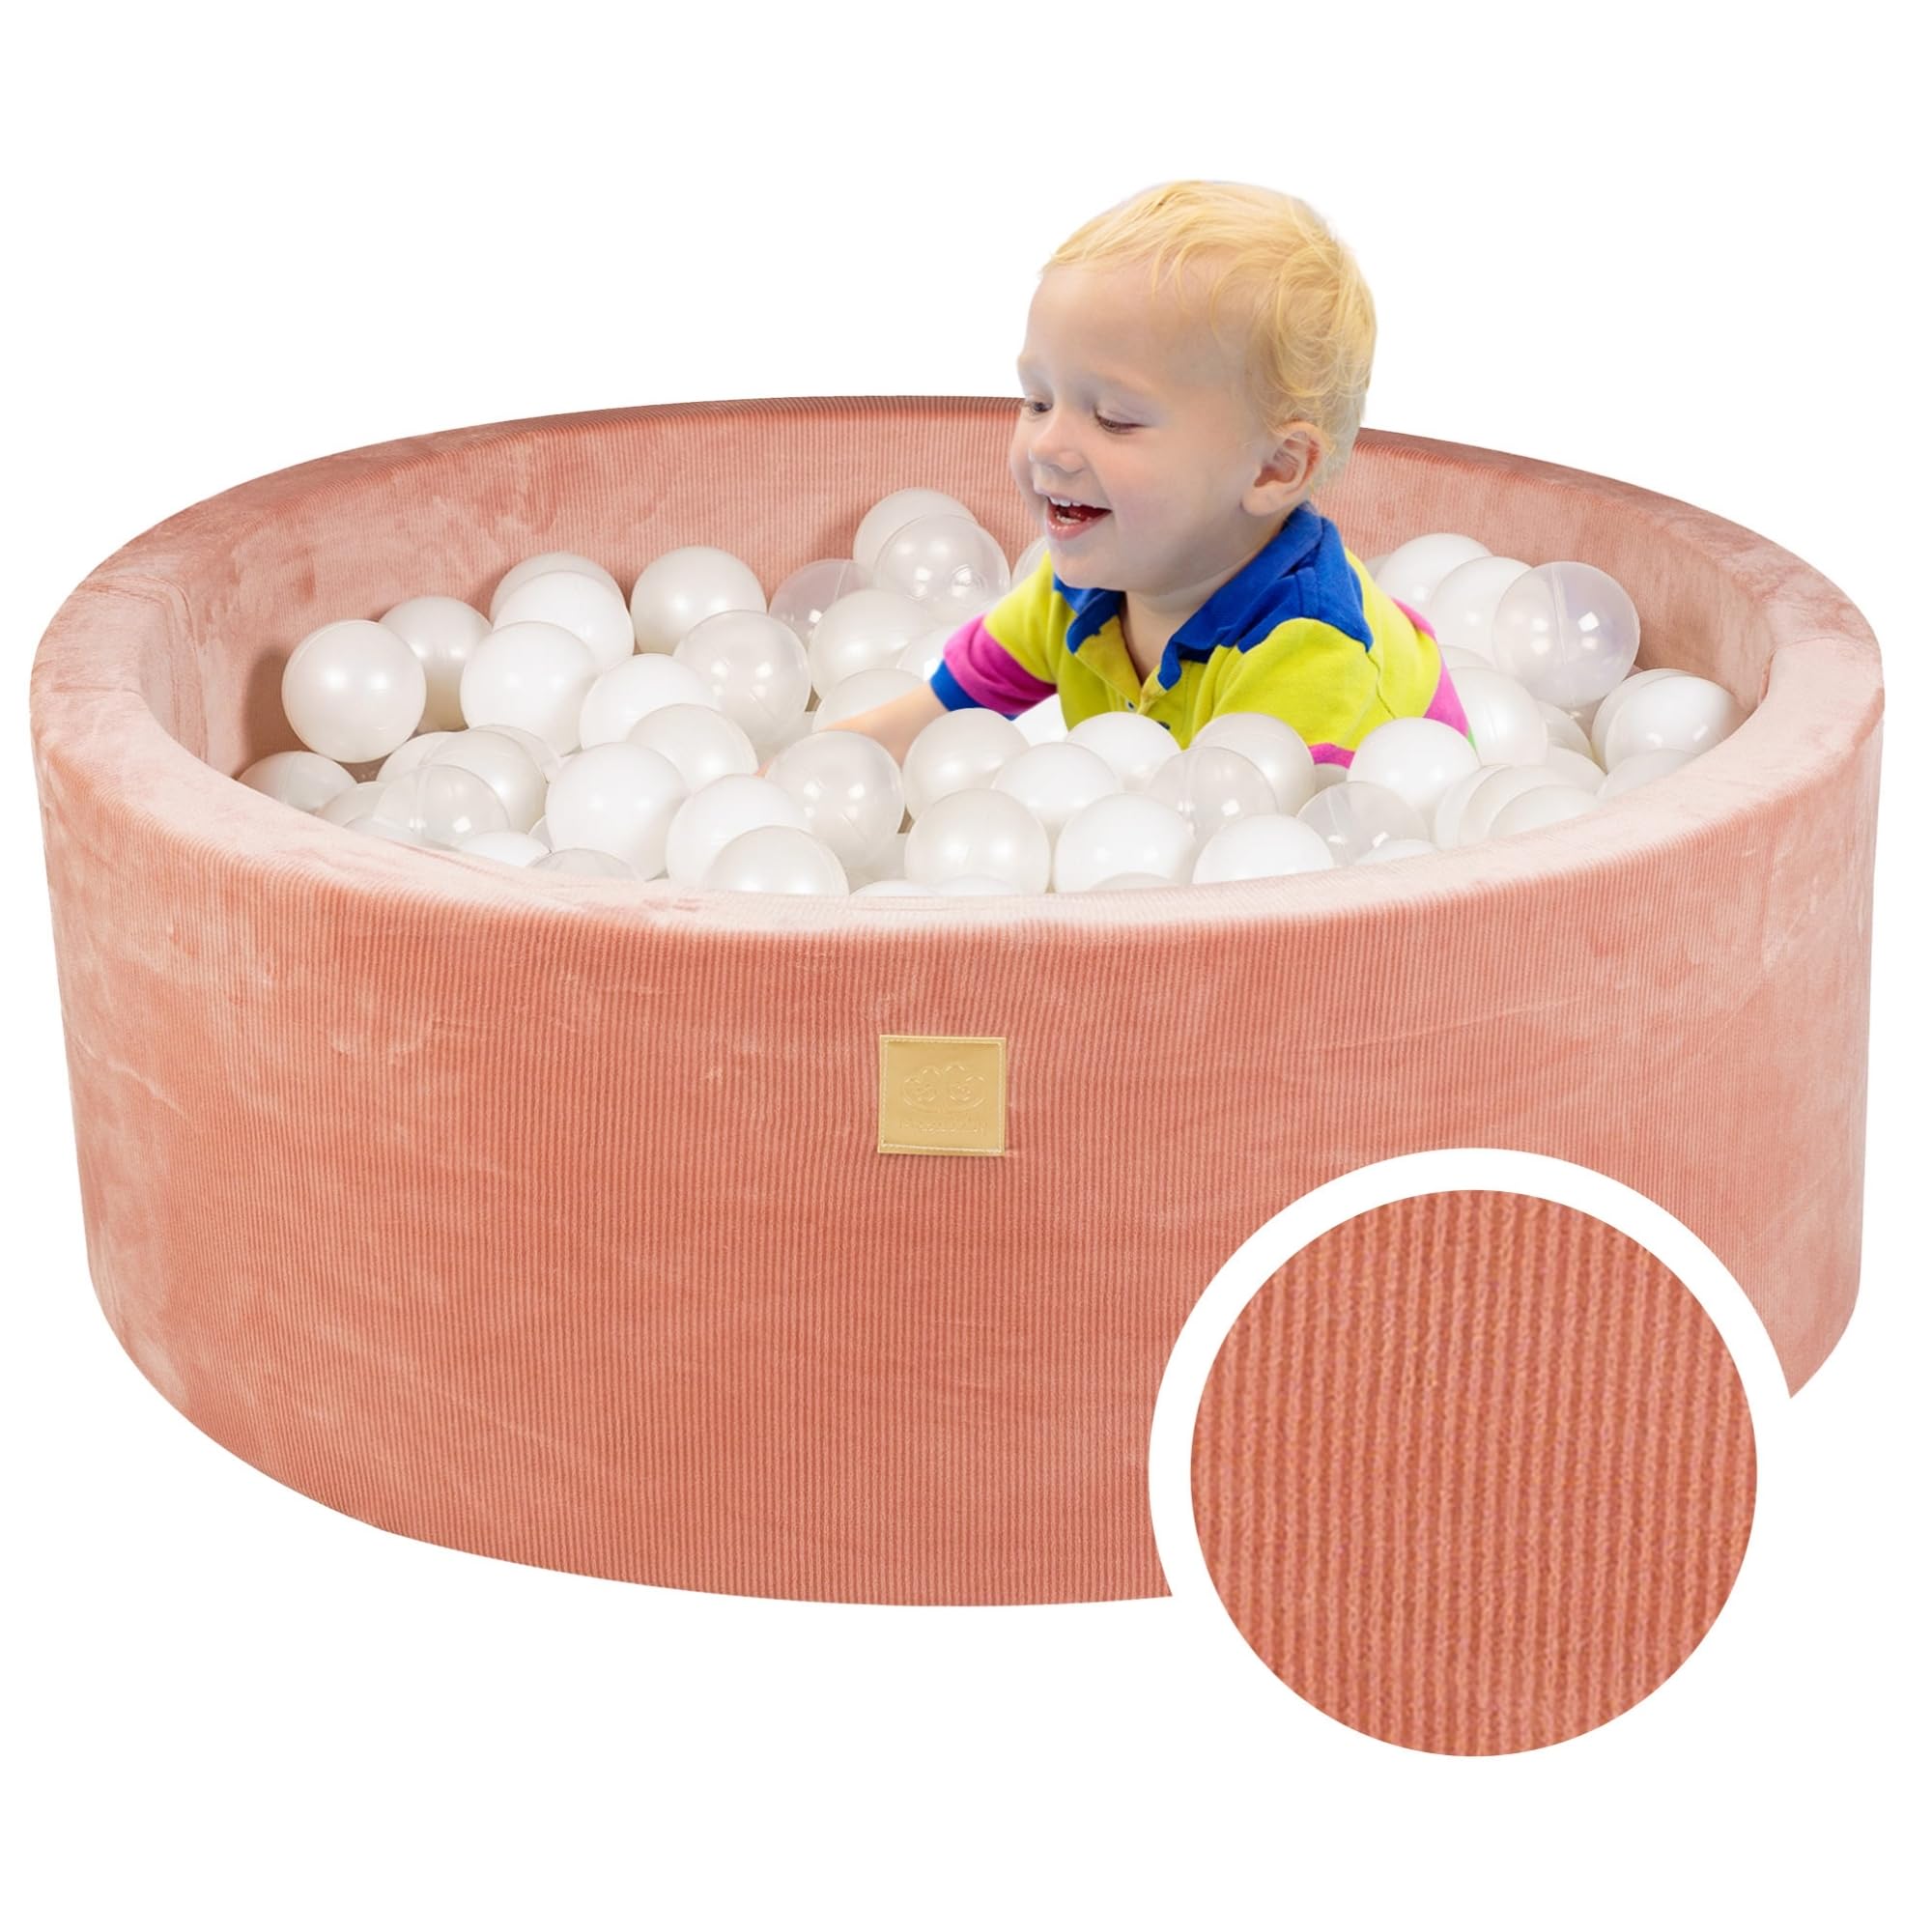 MEOWBABY Bällebad Baby - Rund 90x30cm Baby Pool für Kinder mit 200 Bälle, Kord, Aprikose: Weiß/Perlweiß/Transparent